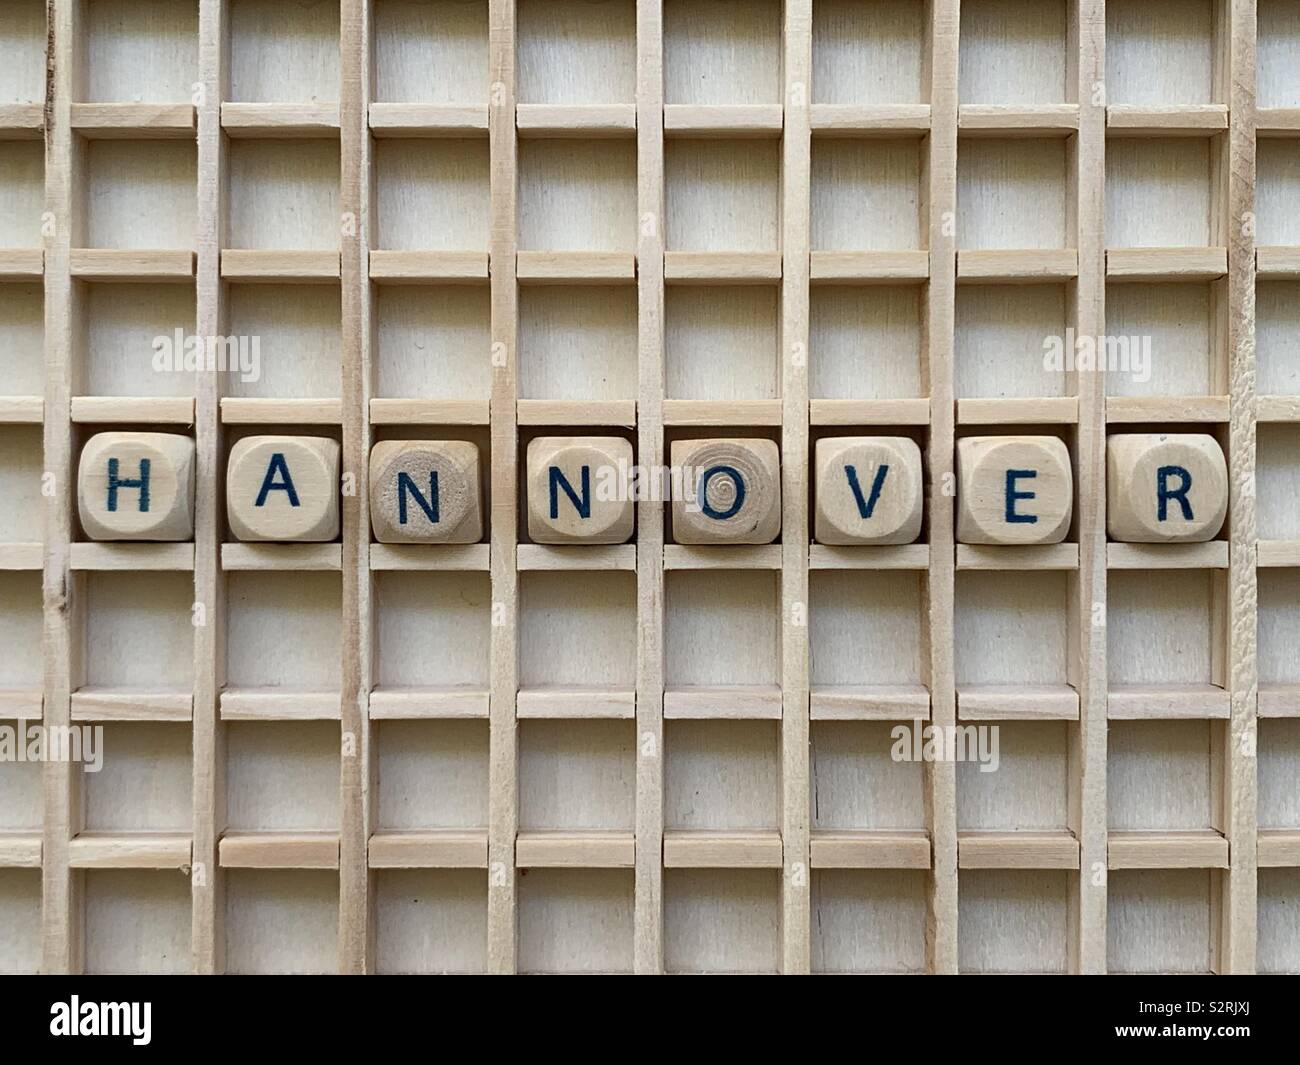 Hannover, Deutschland, Souvenir mit einer Komposition aus Holz Würfel Würfel Buchstaben Stockfoto